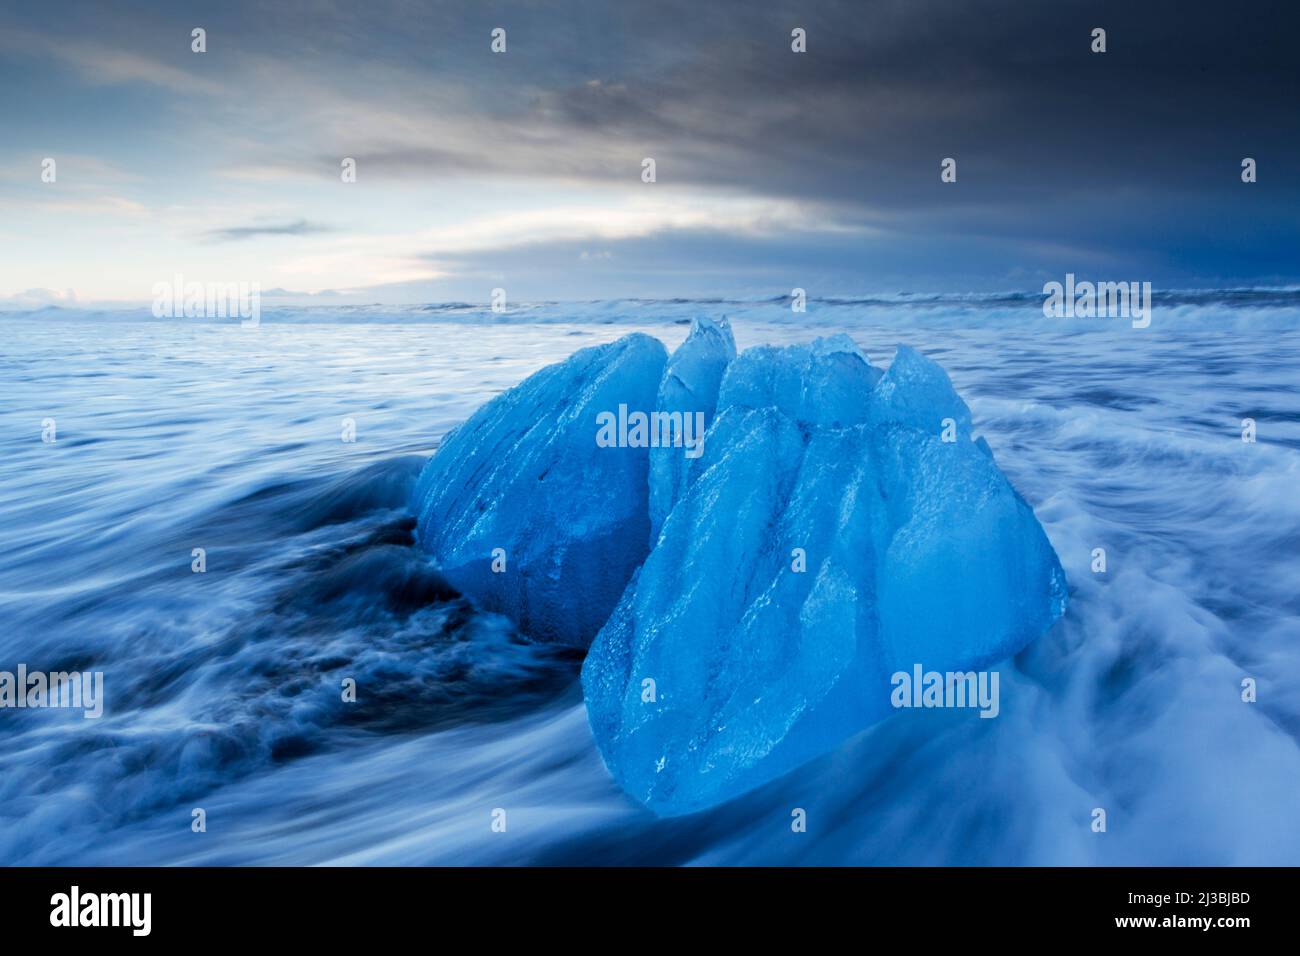 Les vestiges de l'iceberg se sont enlais sur la plage de Jökulsarlön, où des icebergs s'écoulent de la lagune de Jökulsarlön en Islande Banque D'Images